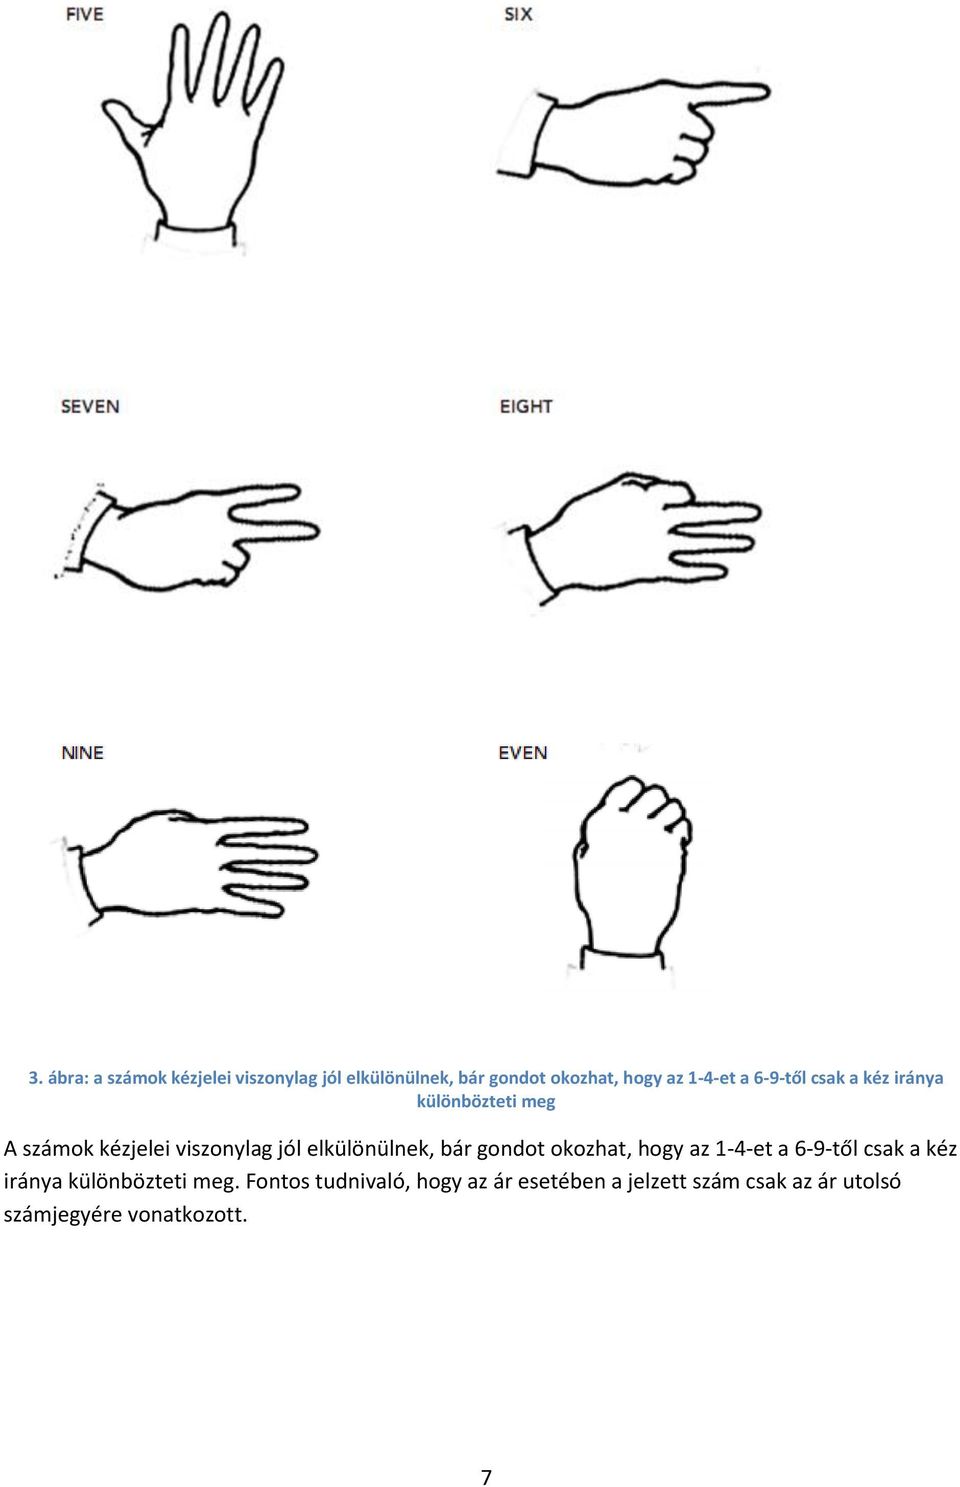 elkülönülnek, bár gondot okozhat, hogy az 1-4-et a 6-9-től csak a kéz iránya különbözteti